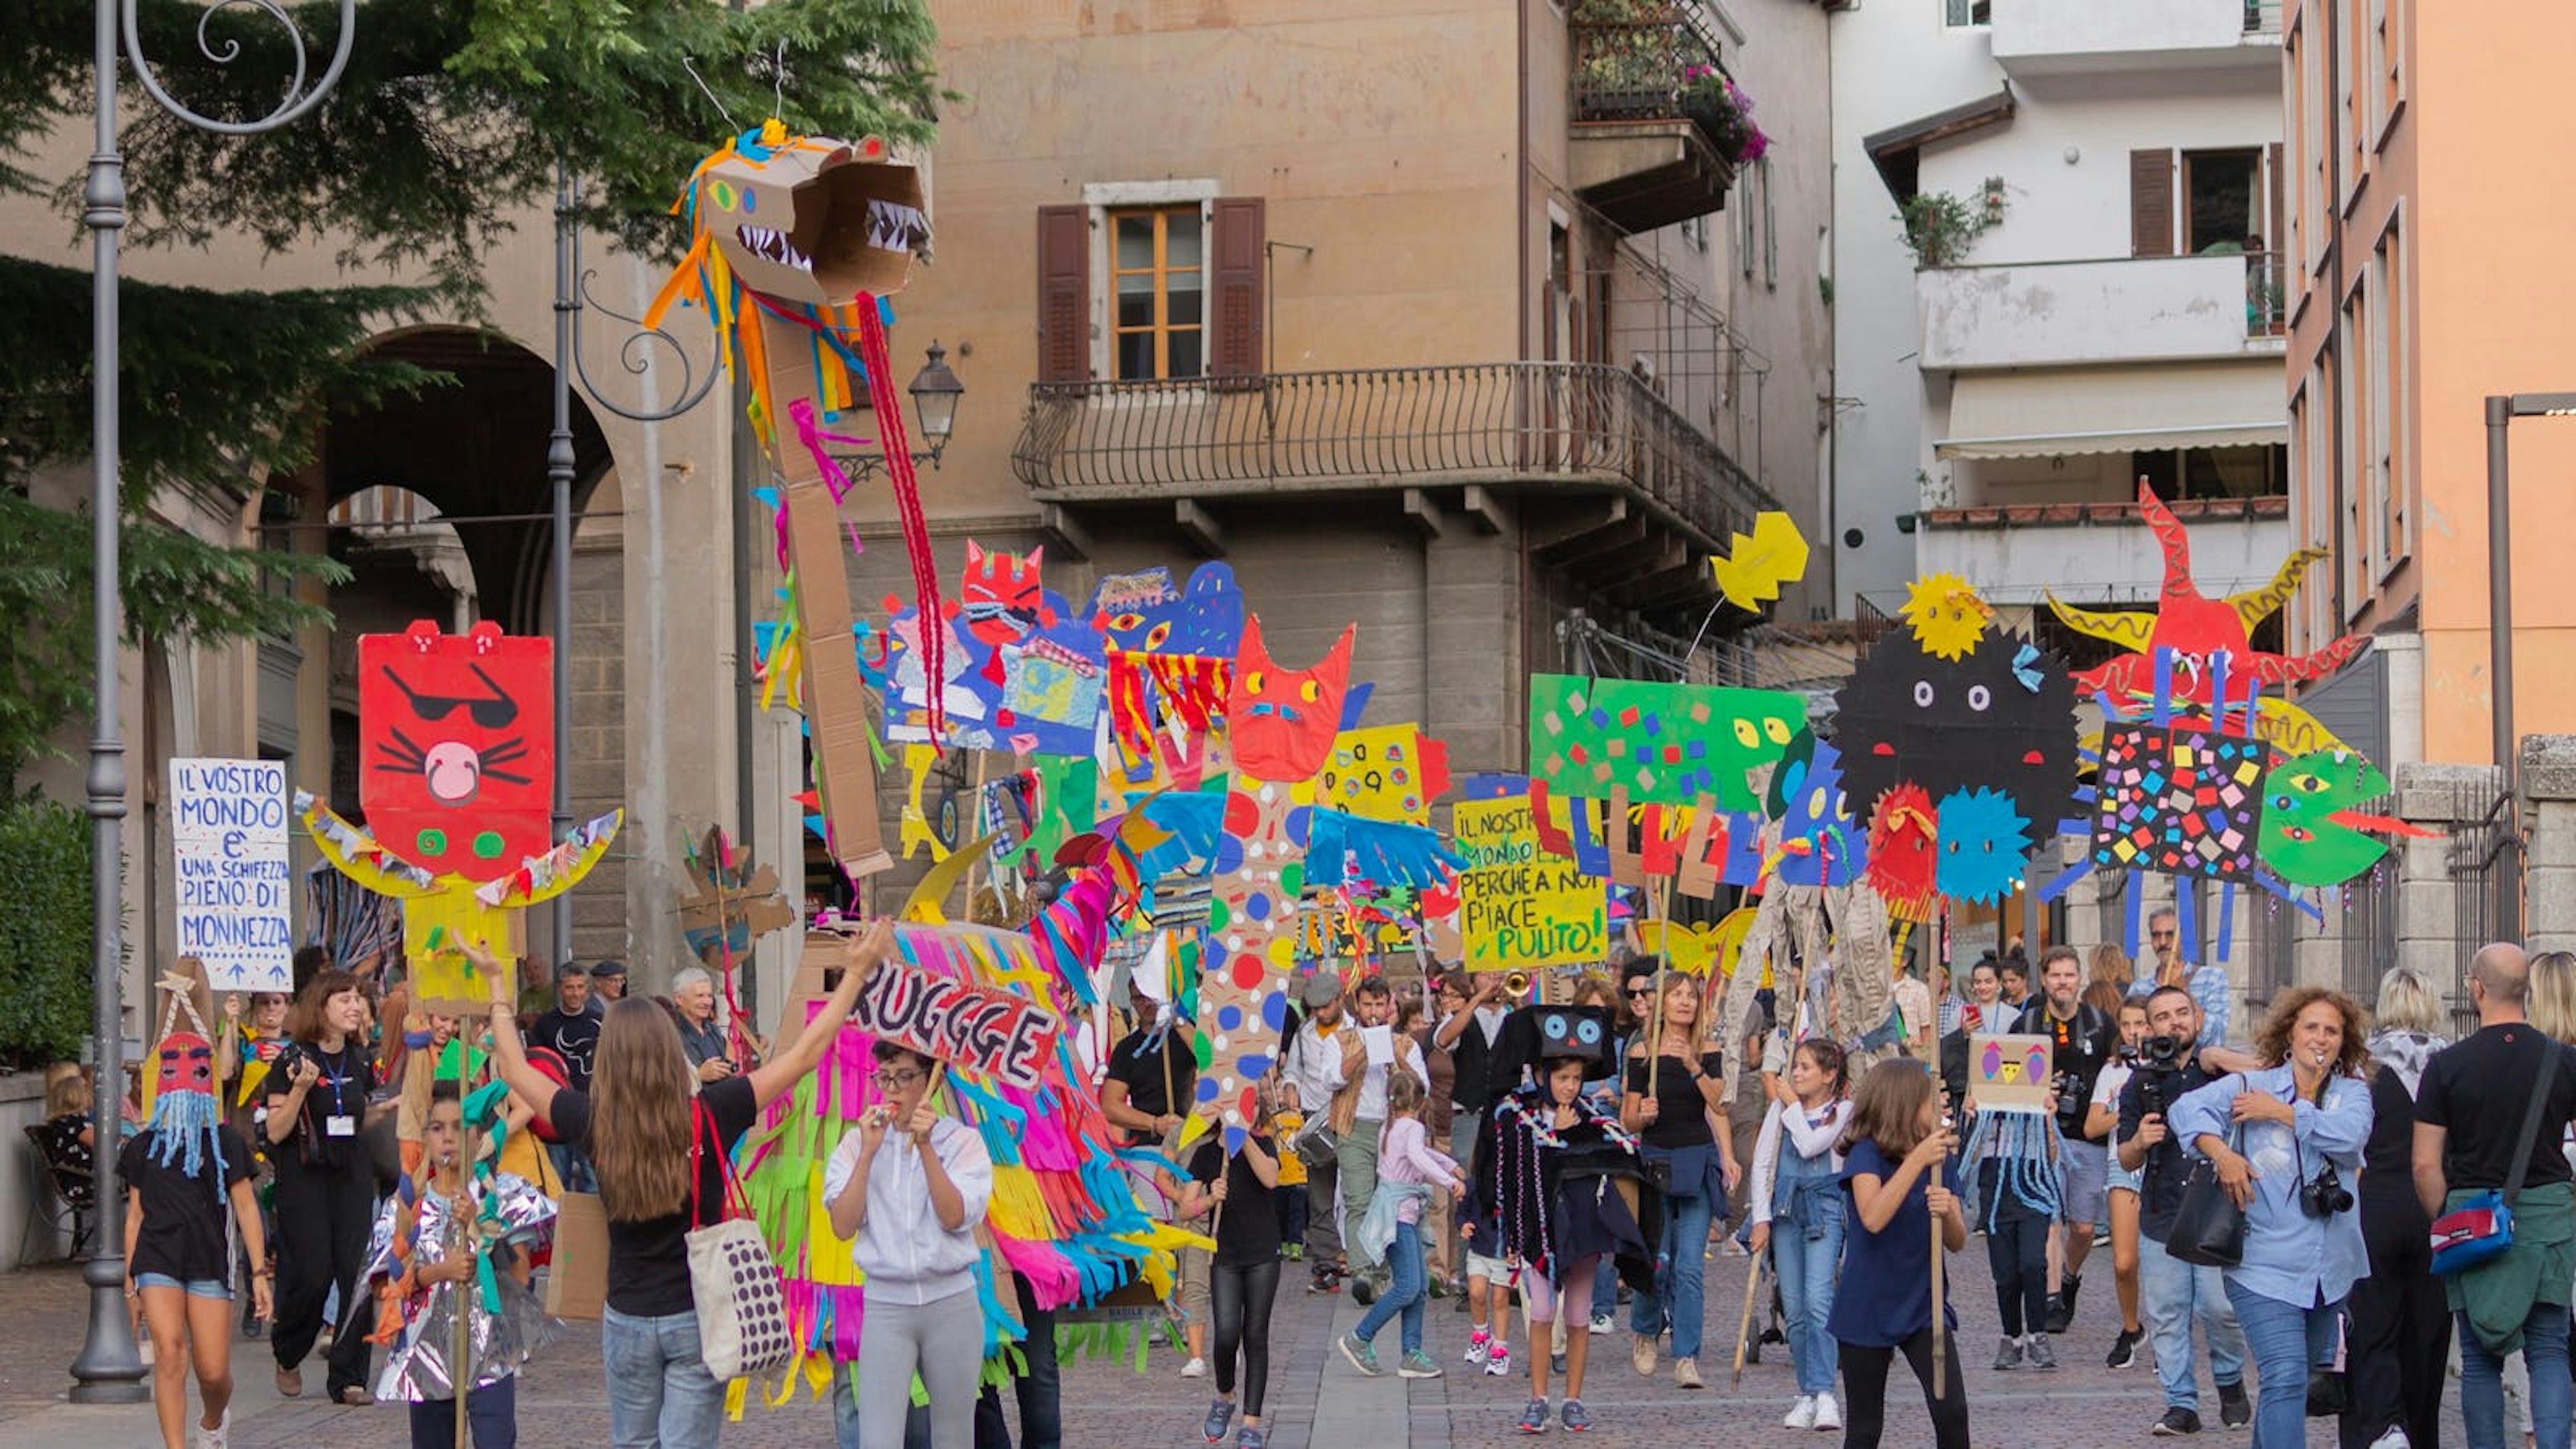 Una parata di giovanissimi nelle strade di Rovereto. Hanno cartelli molto colarati realizzati con l'artista e marciano per l'attenzine all'ambiente